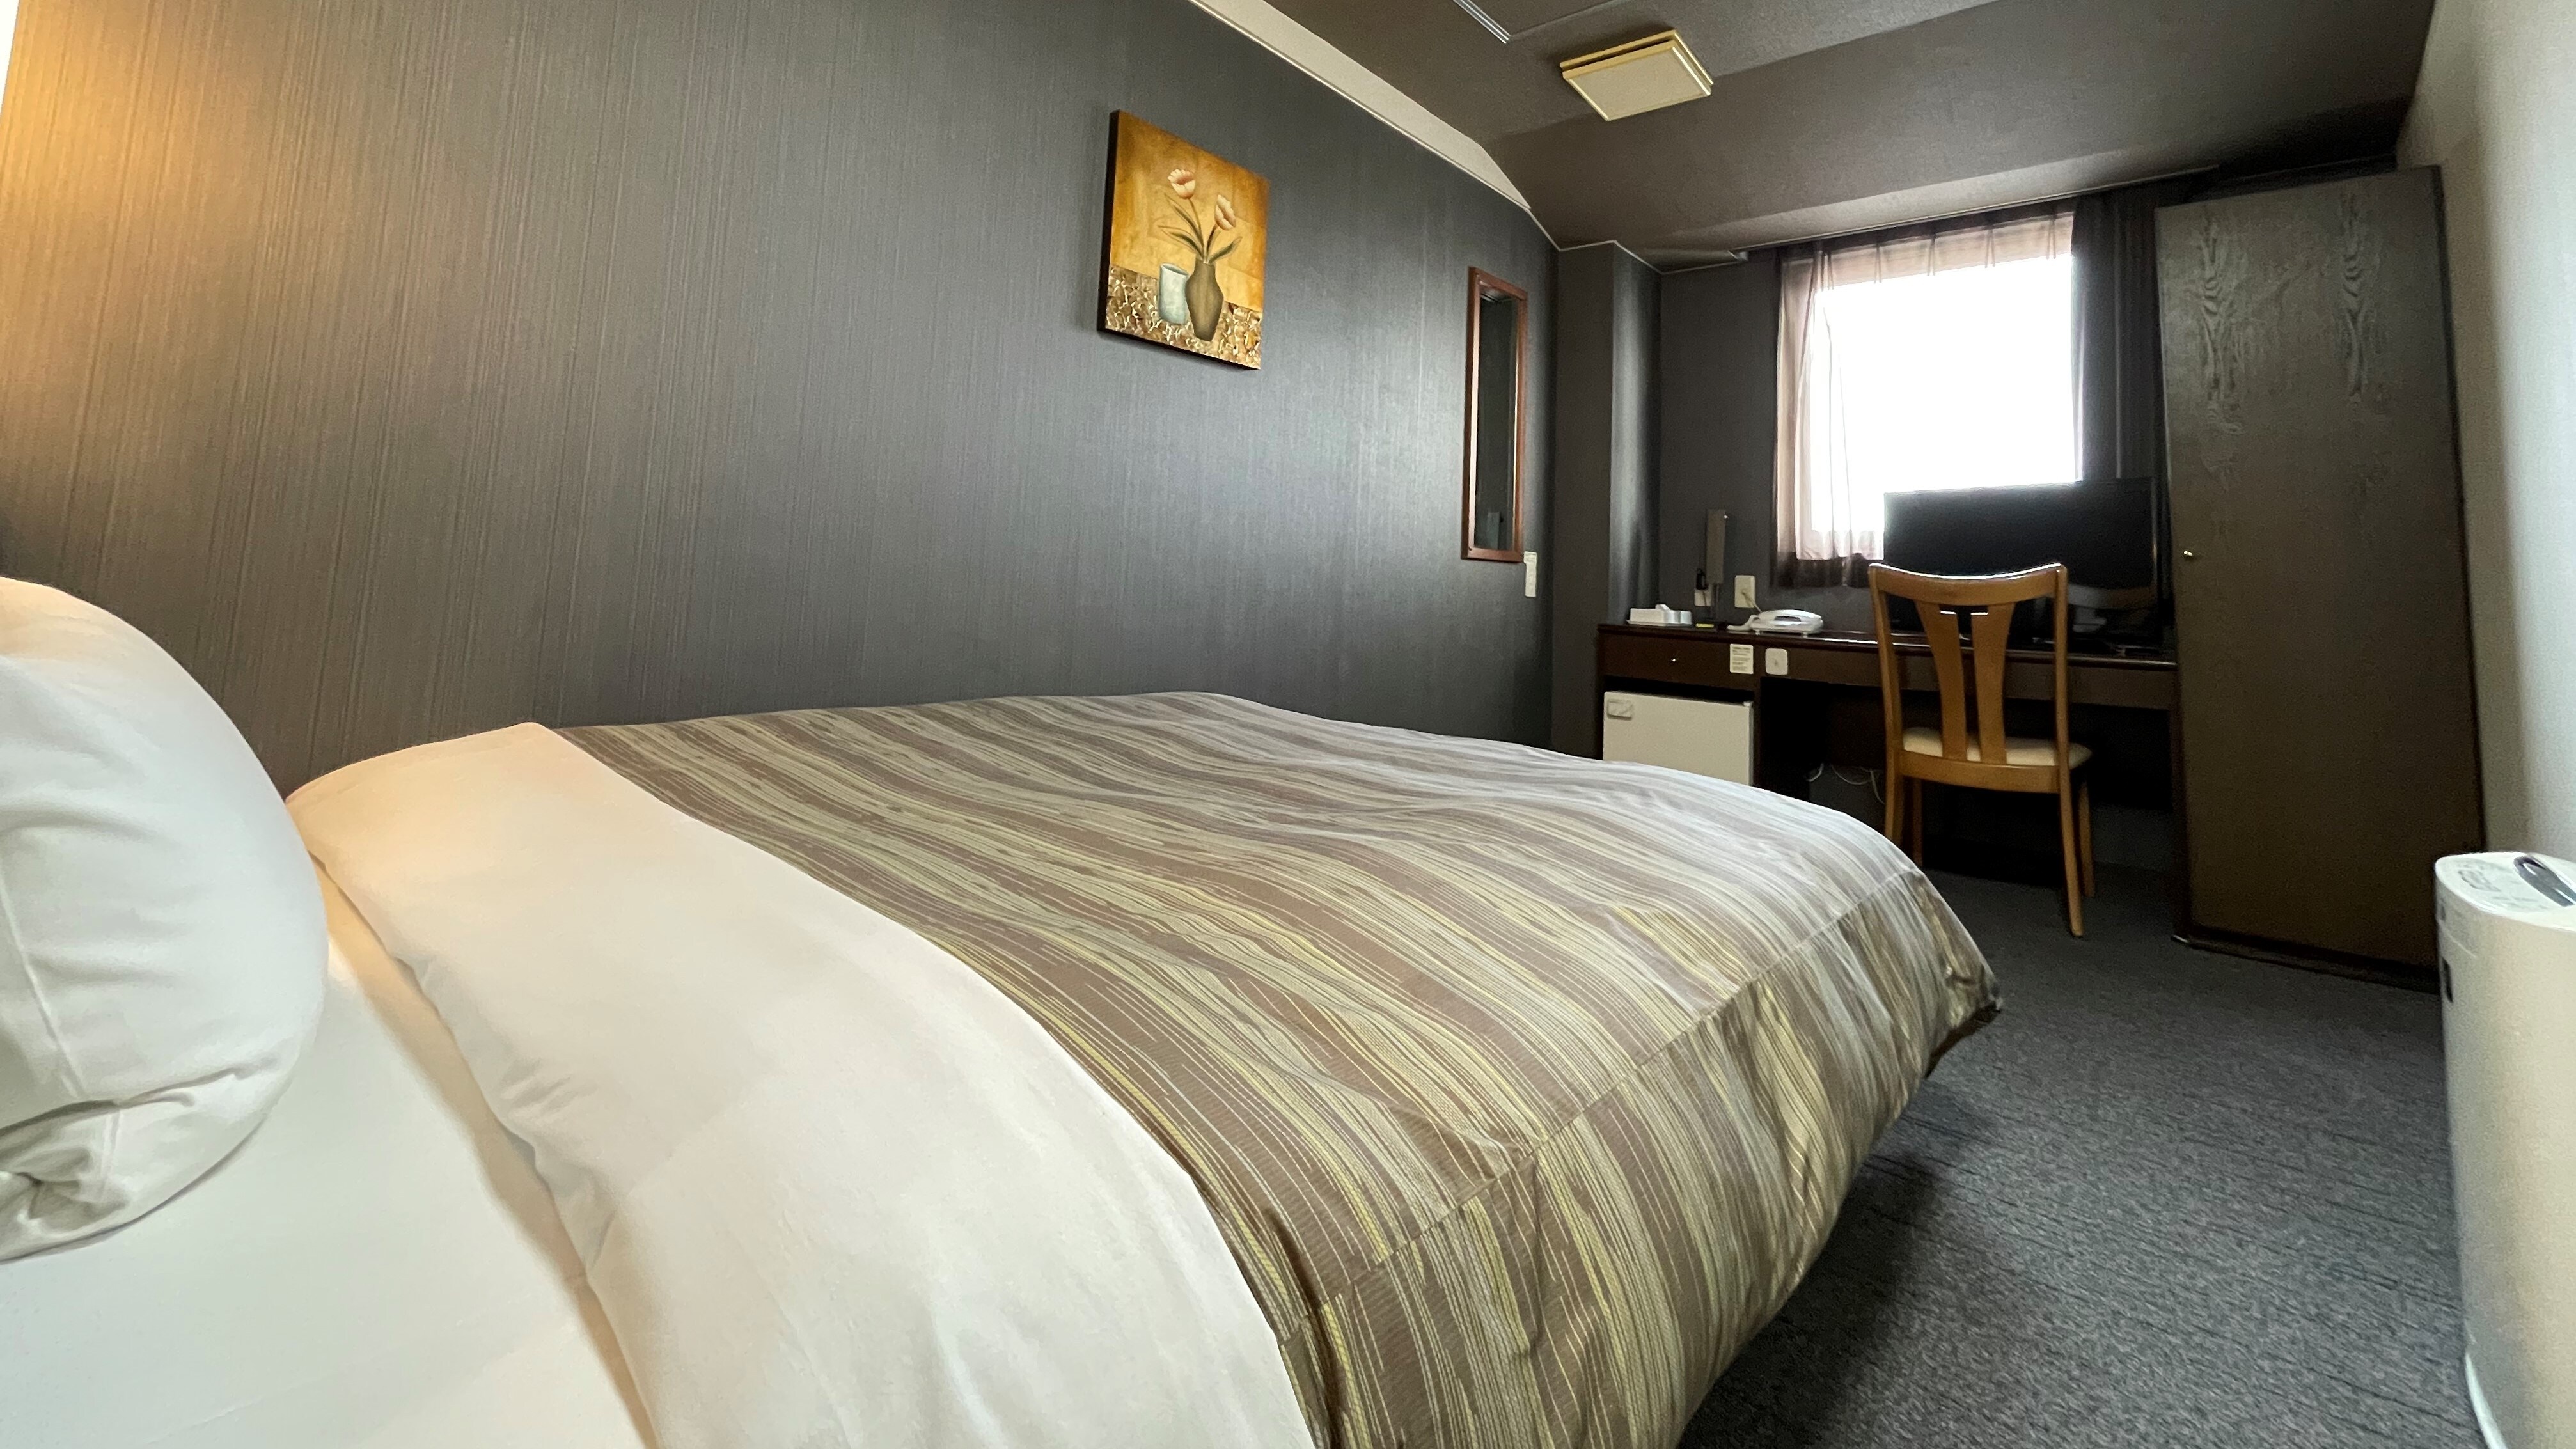 [Single room] Bed width: 140 cm Area: 14 m2